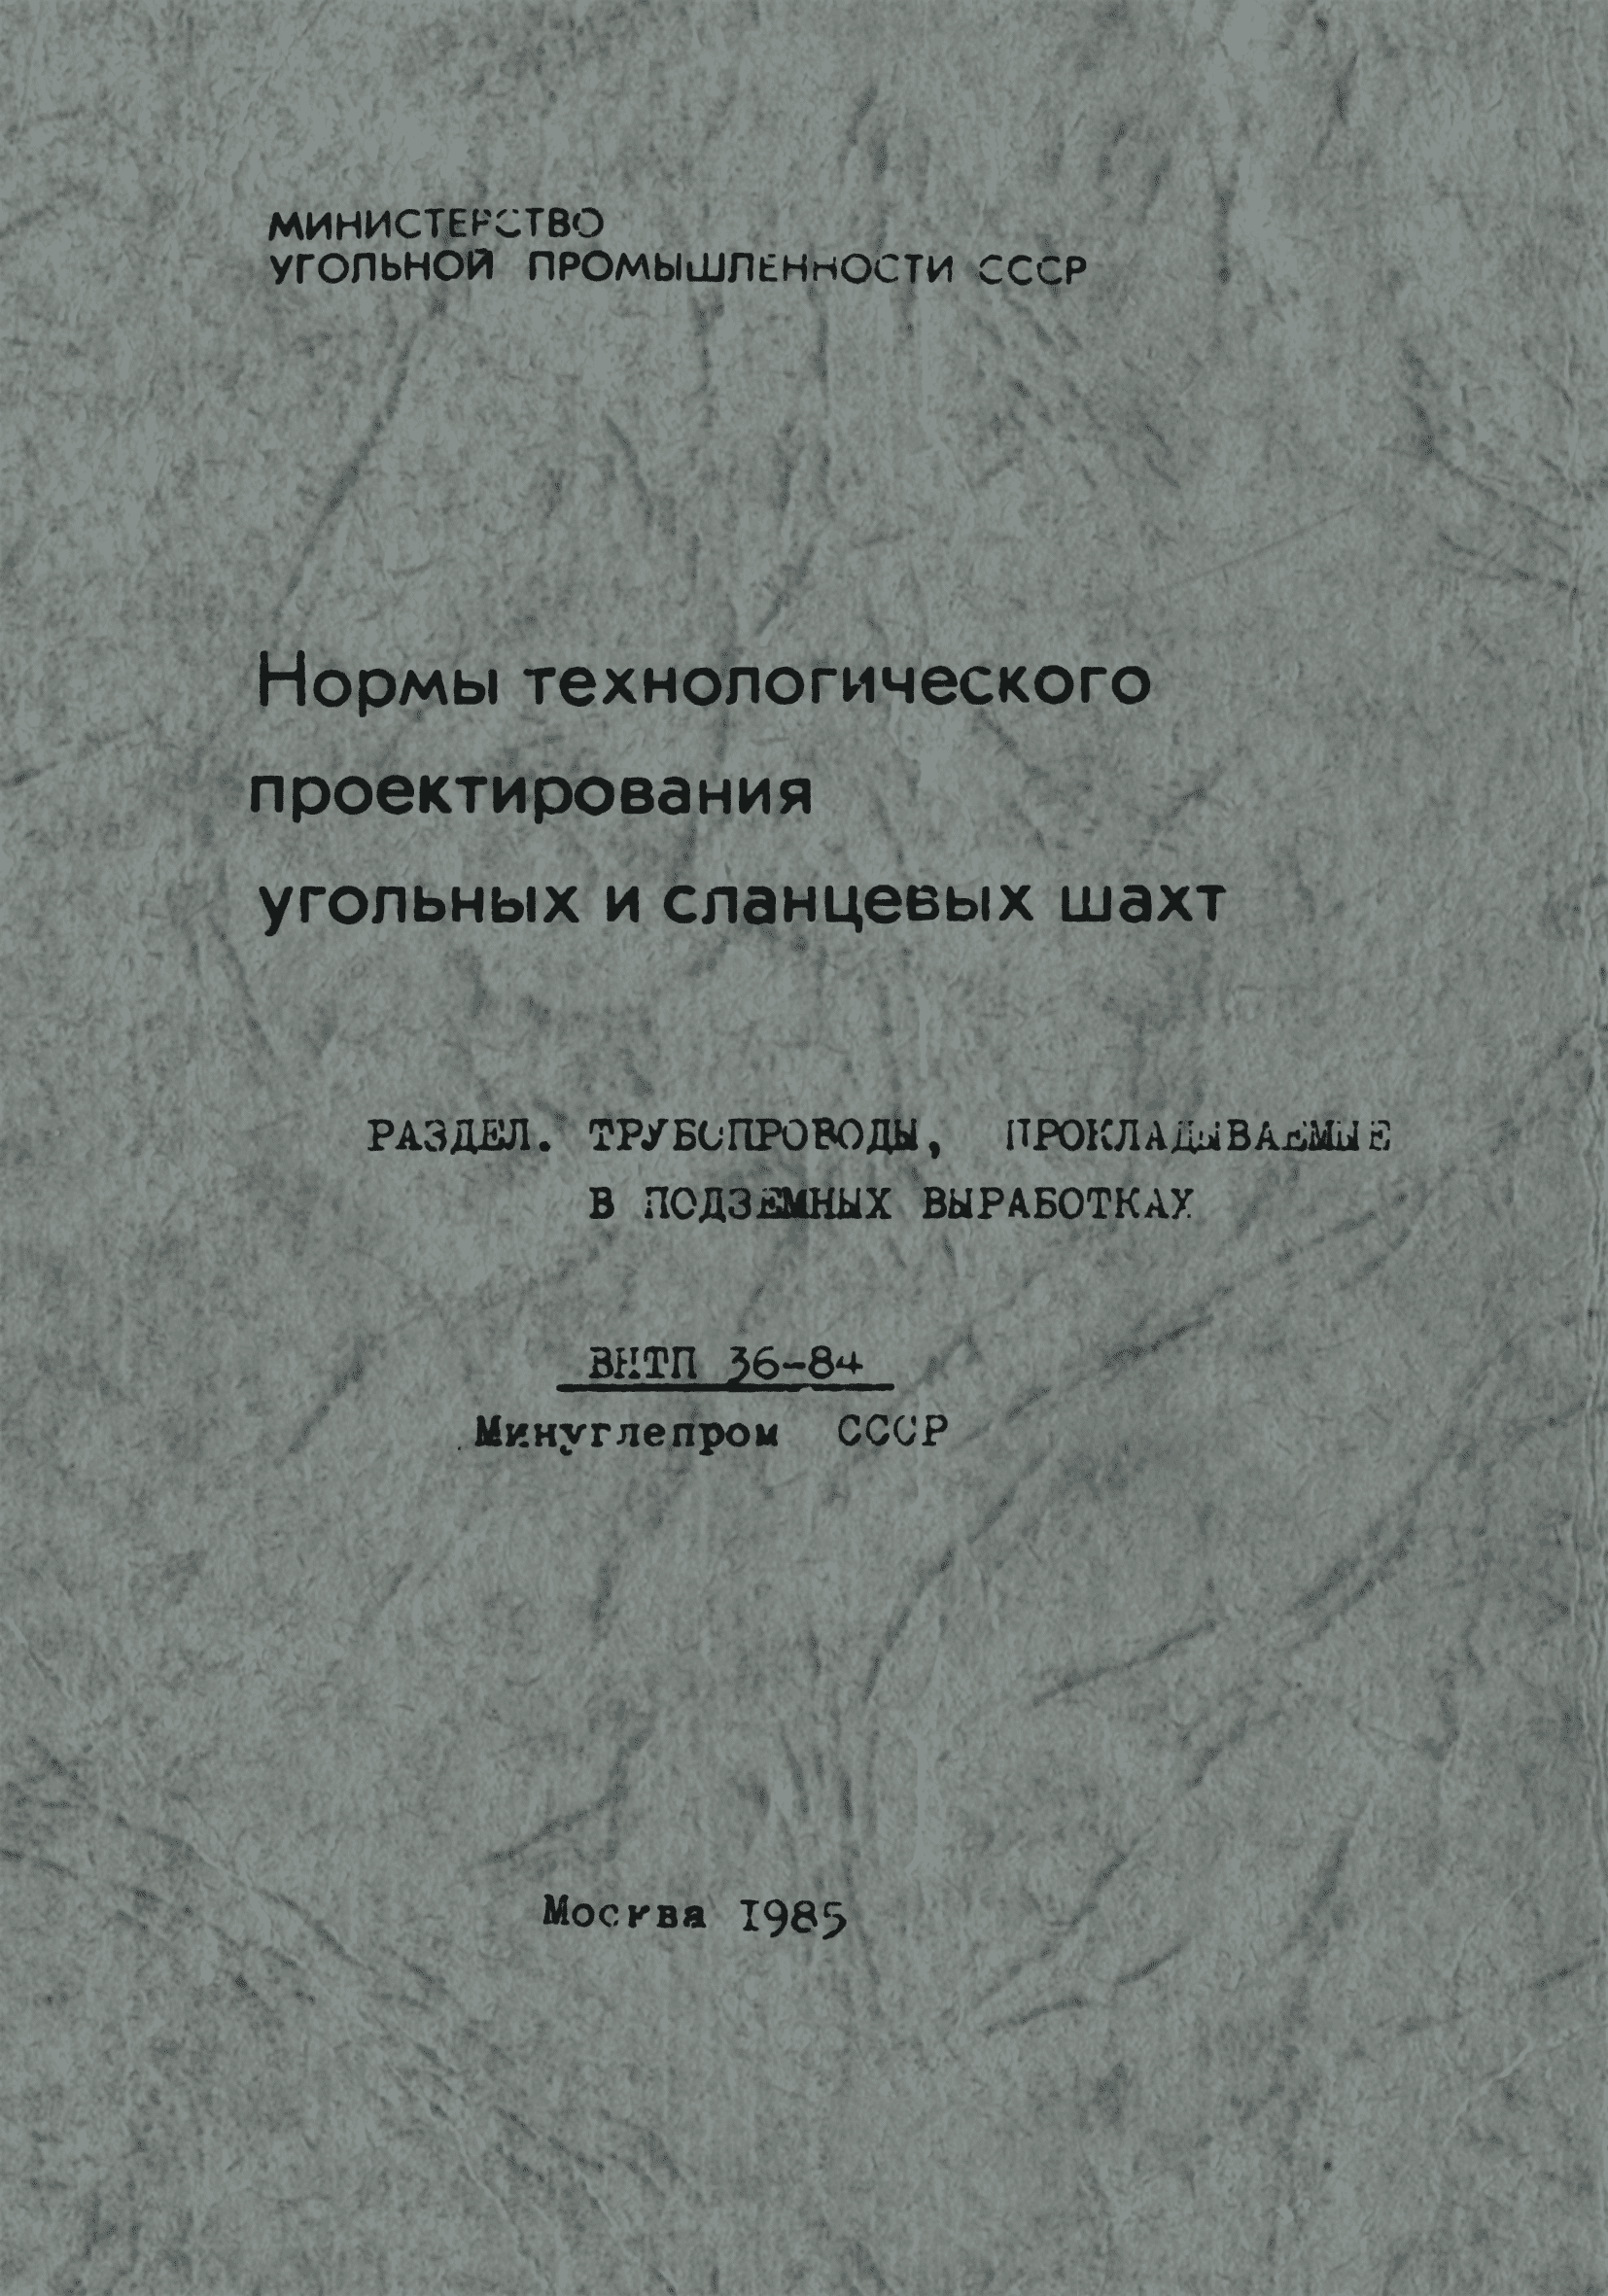 ВНТП 36-84